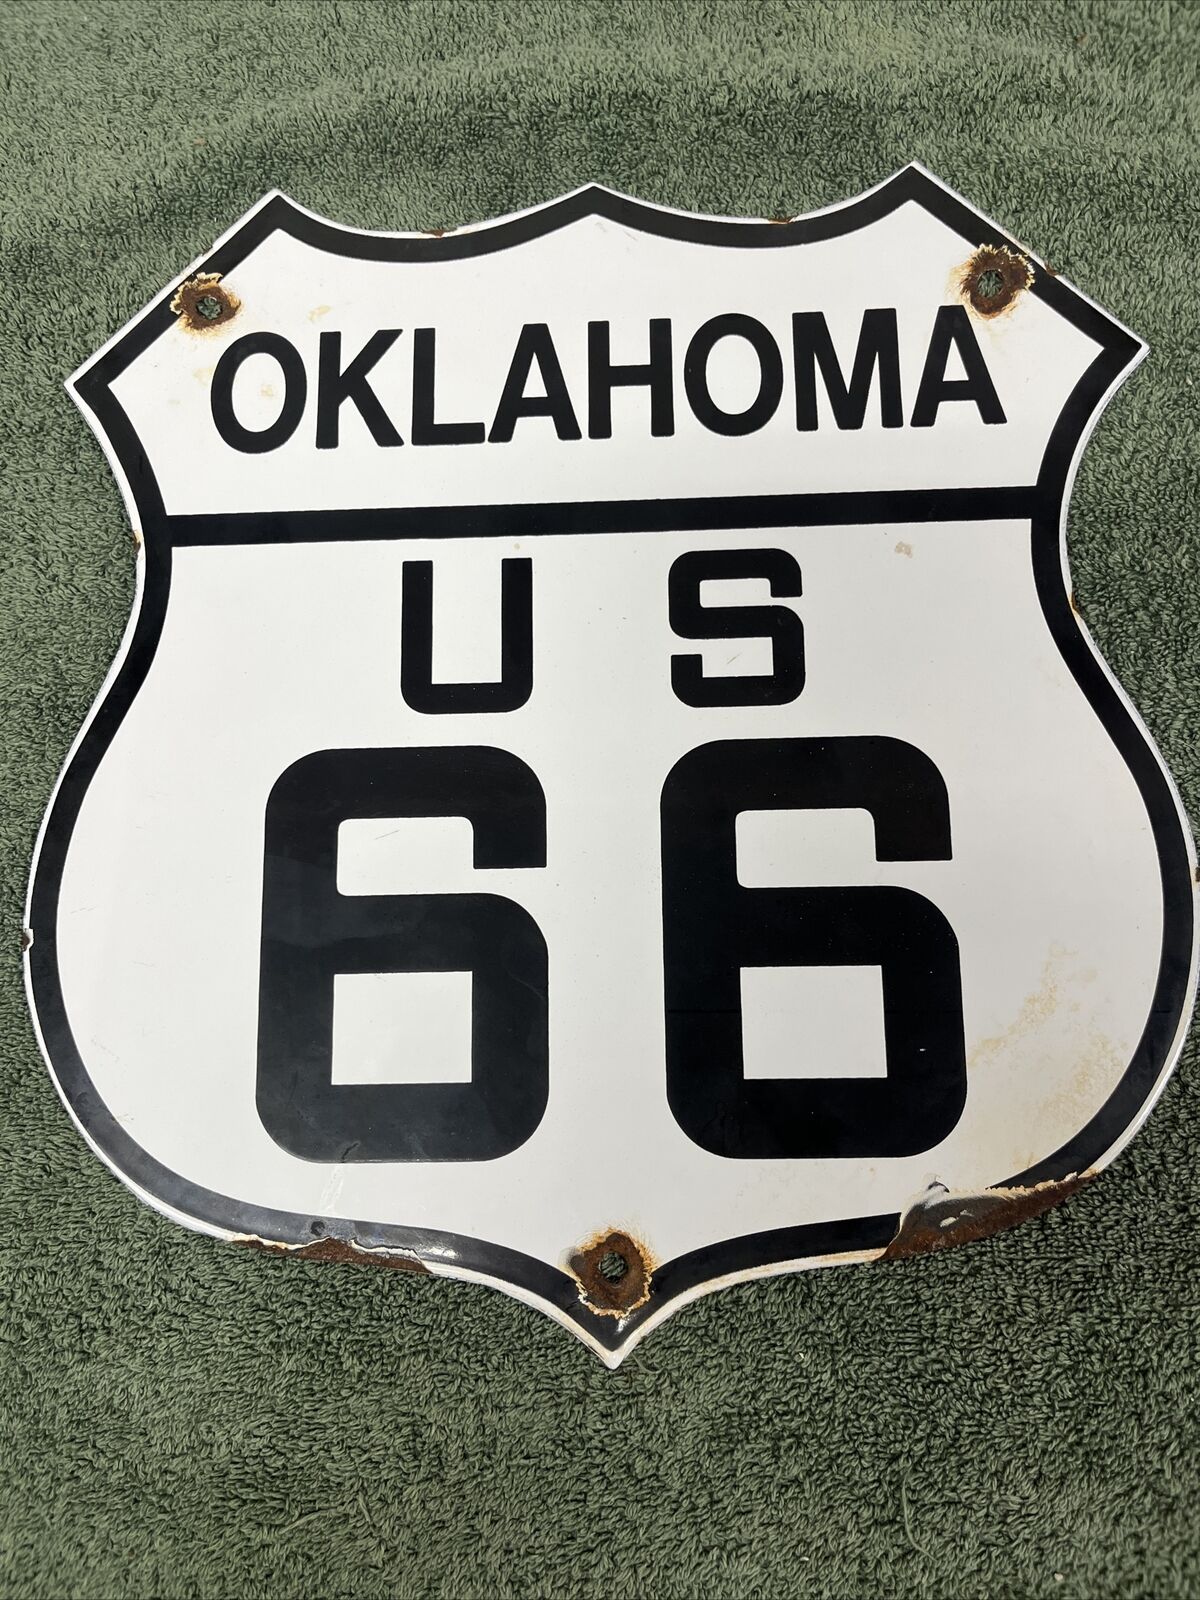 VINTAGE US ROUTE 66 OKLAHOMA PORCELAIN HIGHWAY SHELD Original Sign